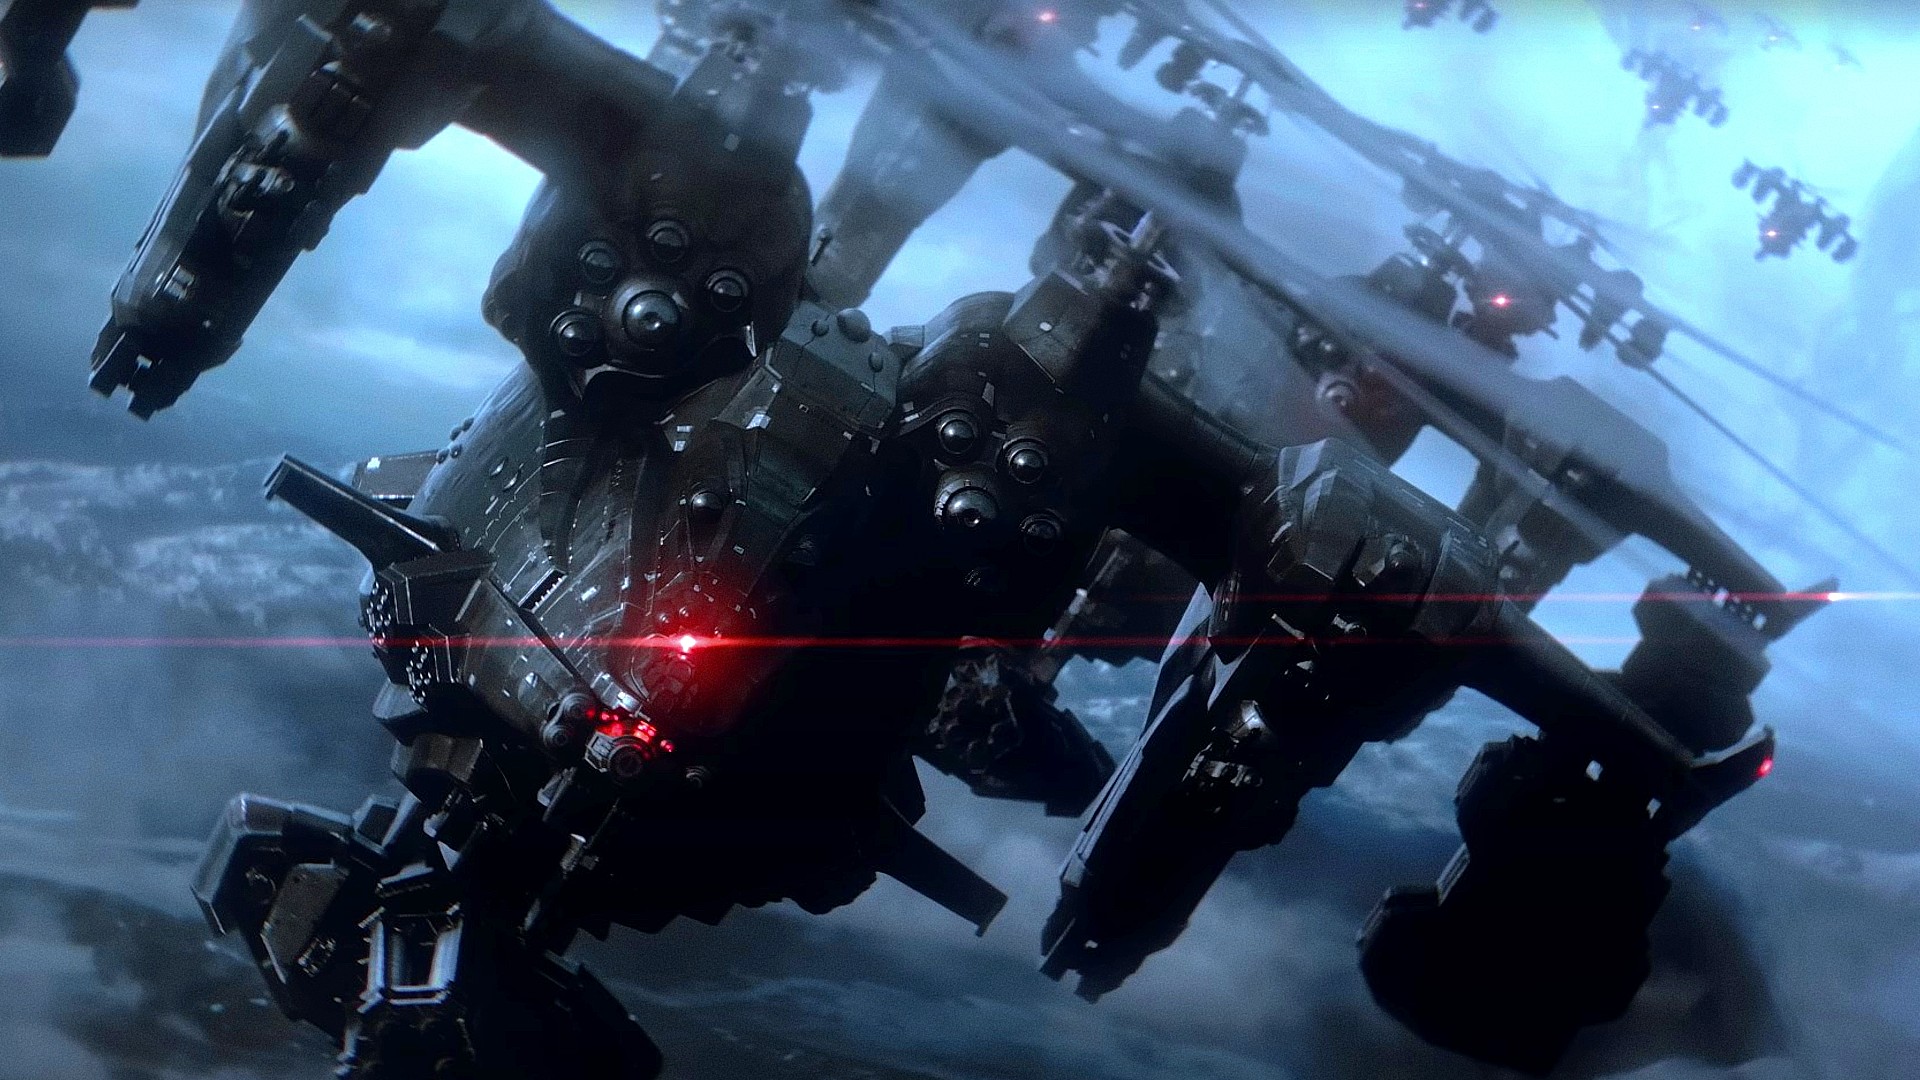 Elden Ring devs’ Armored Core 6 release date leaks online